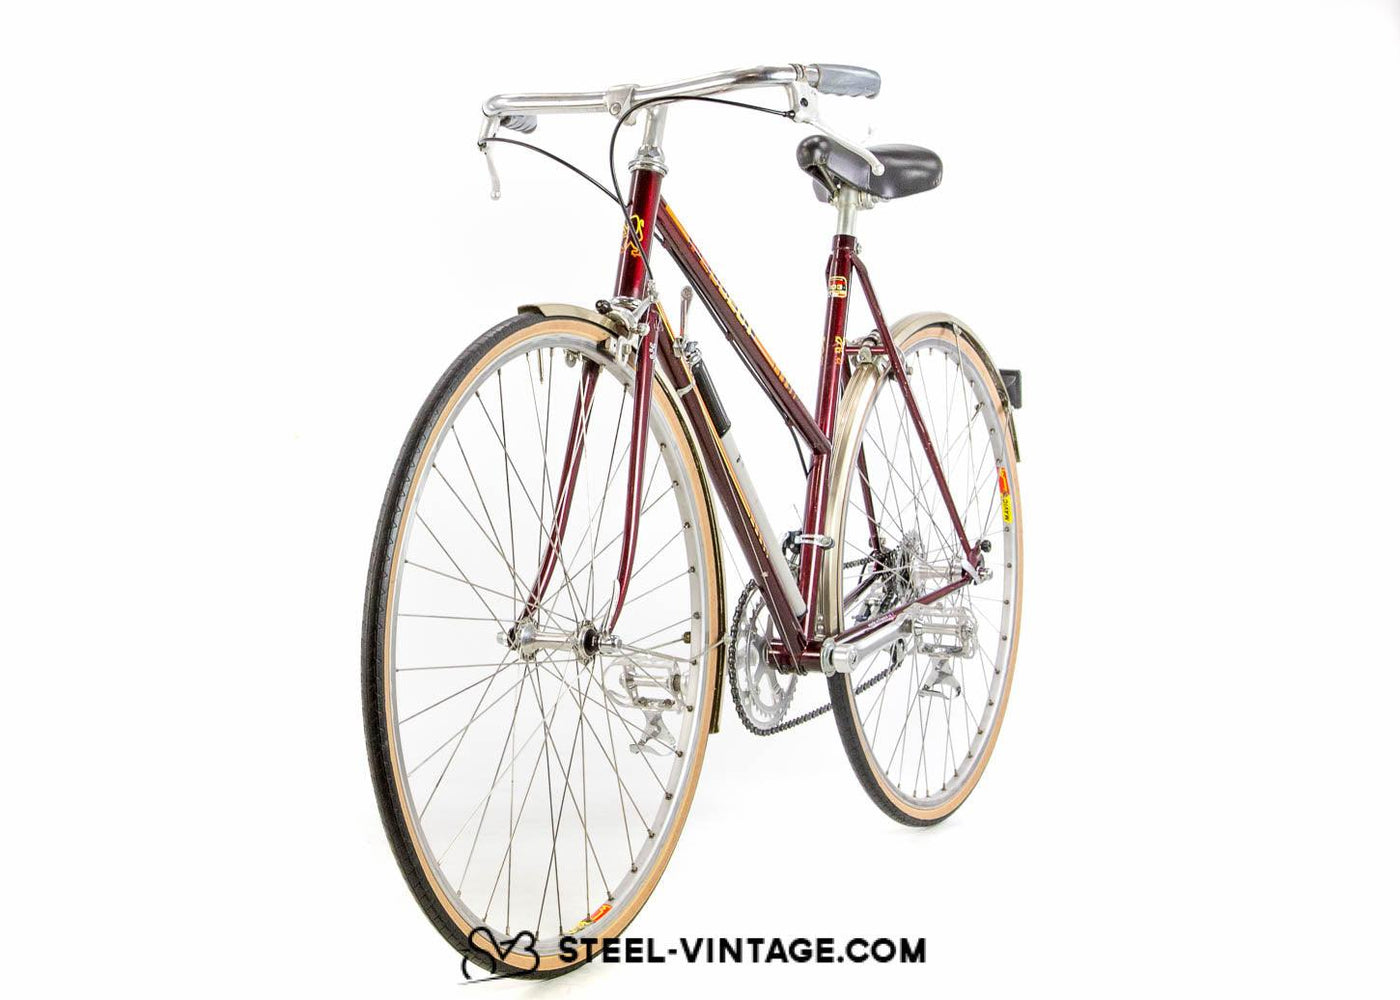 Peugeot PH15 TD Anglais Bike 1980s - Steel Vintage Bikes